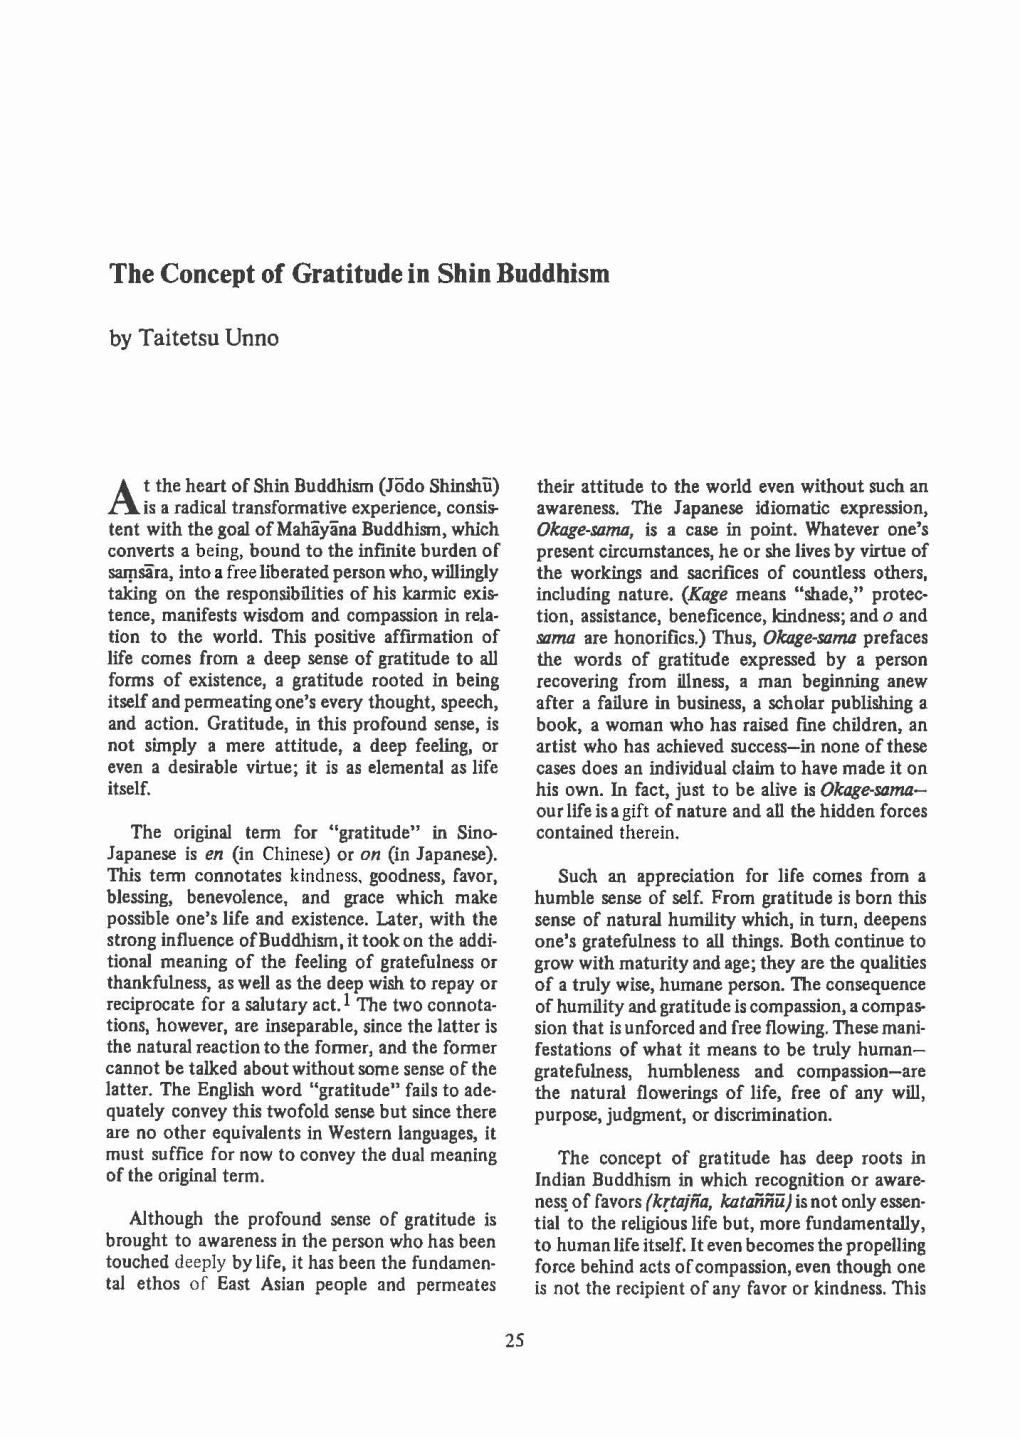 The Concept of Gratitude in Shin Buddhism by Taitetsu Unno